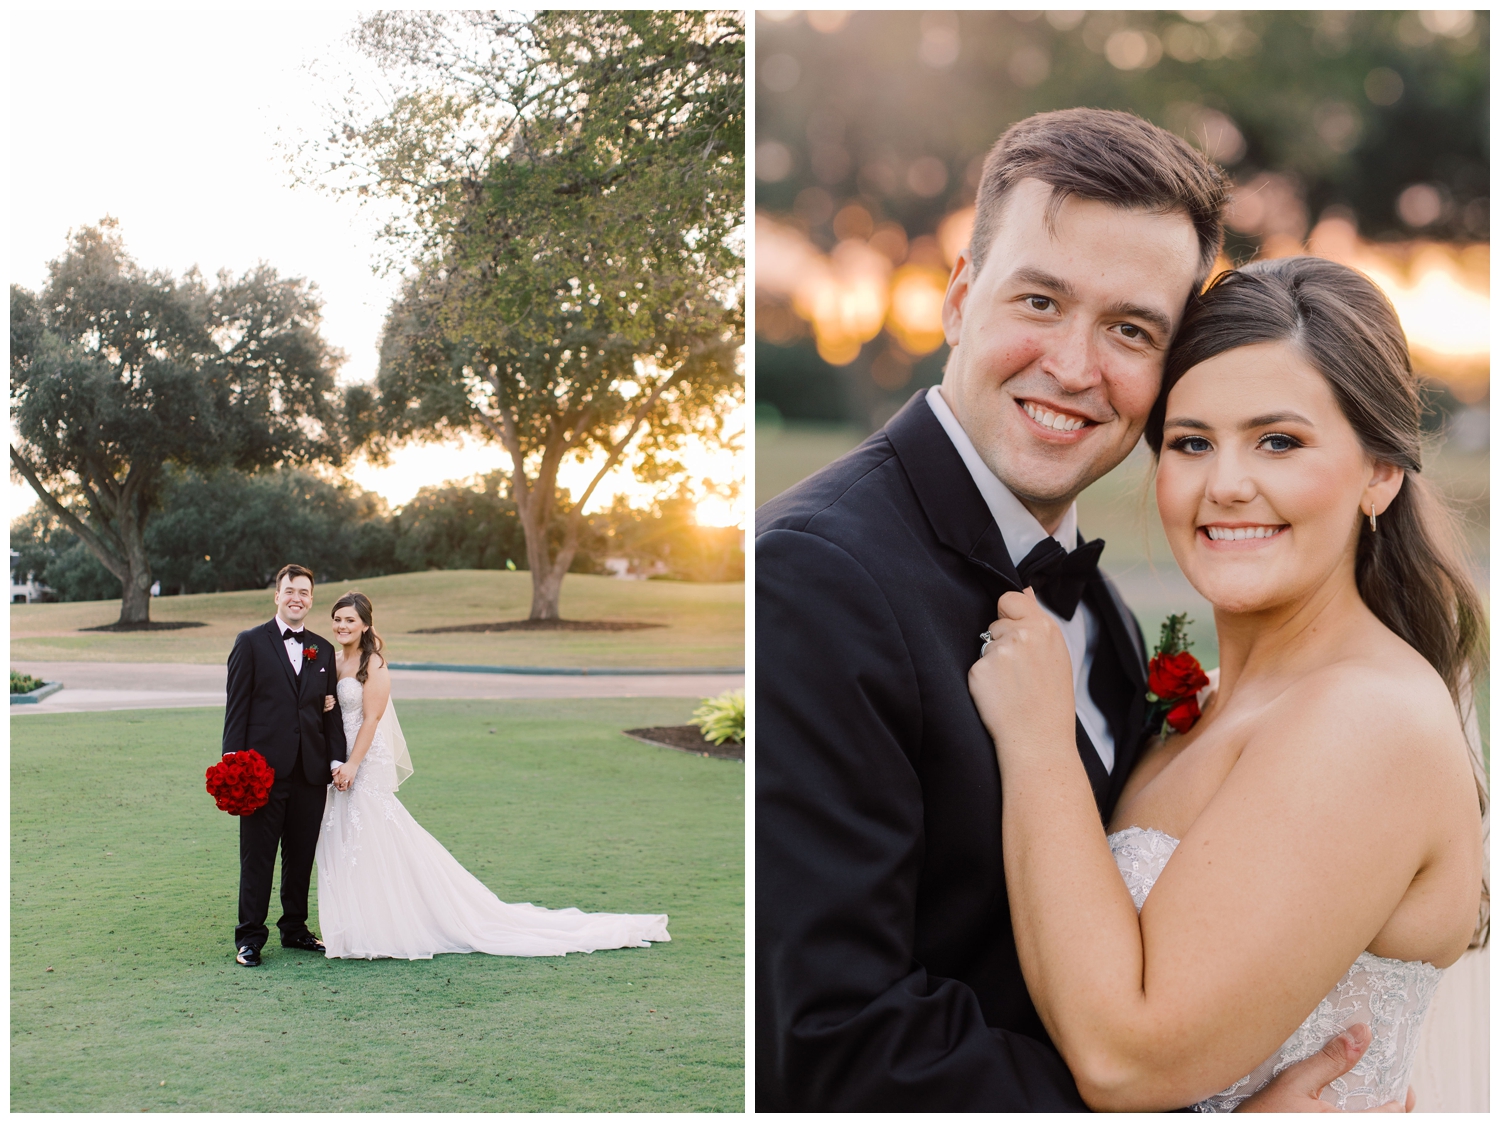 newlywed portraits at sunset at Sugar Creek Country Club wedding